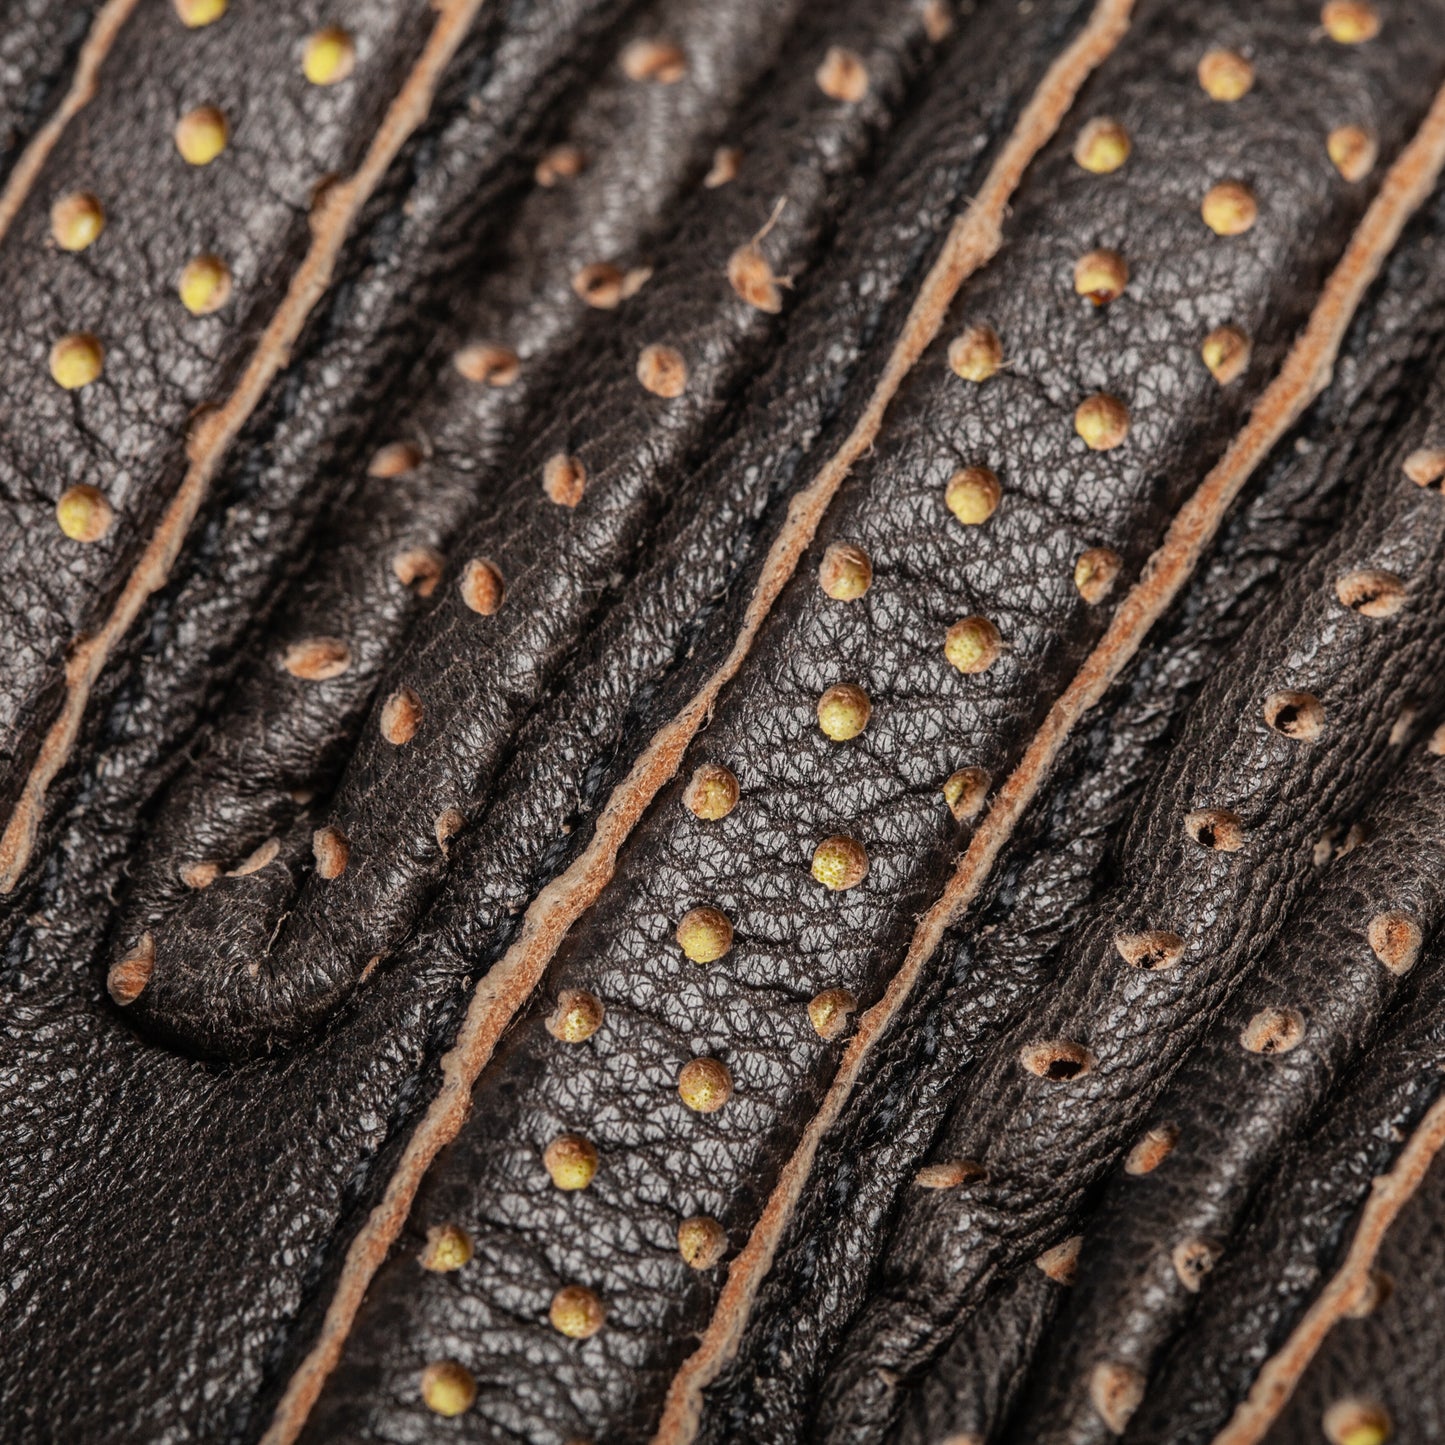 ETHIOPIA RASDASHEN Gloves - Wax/Black